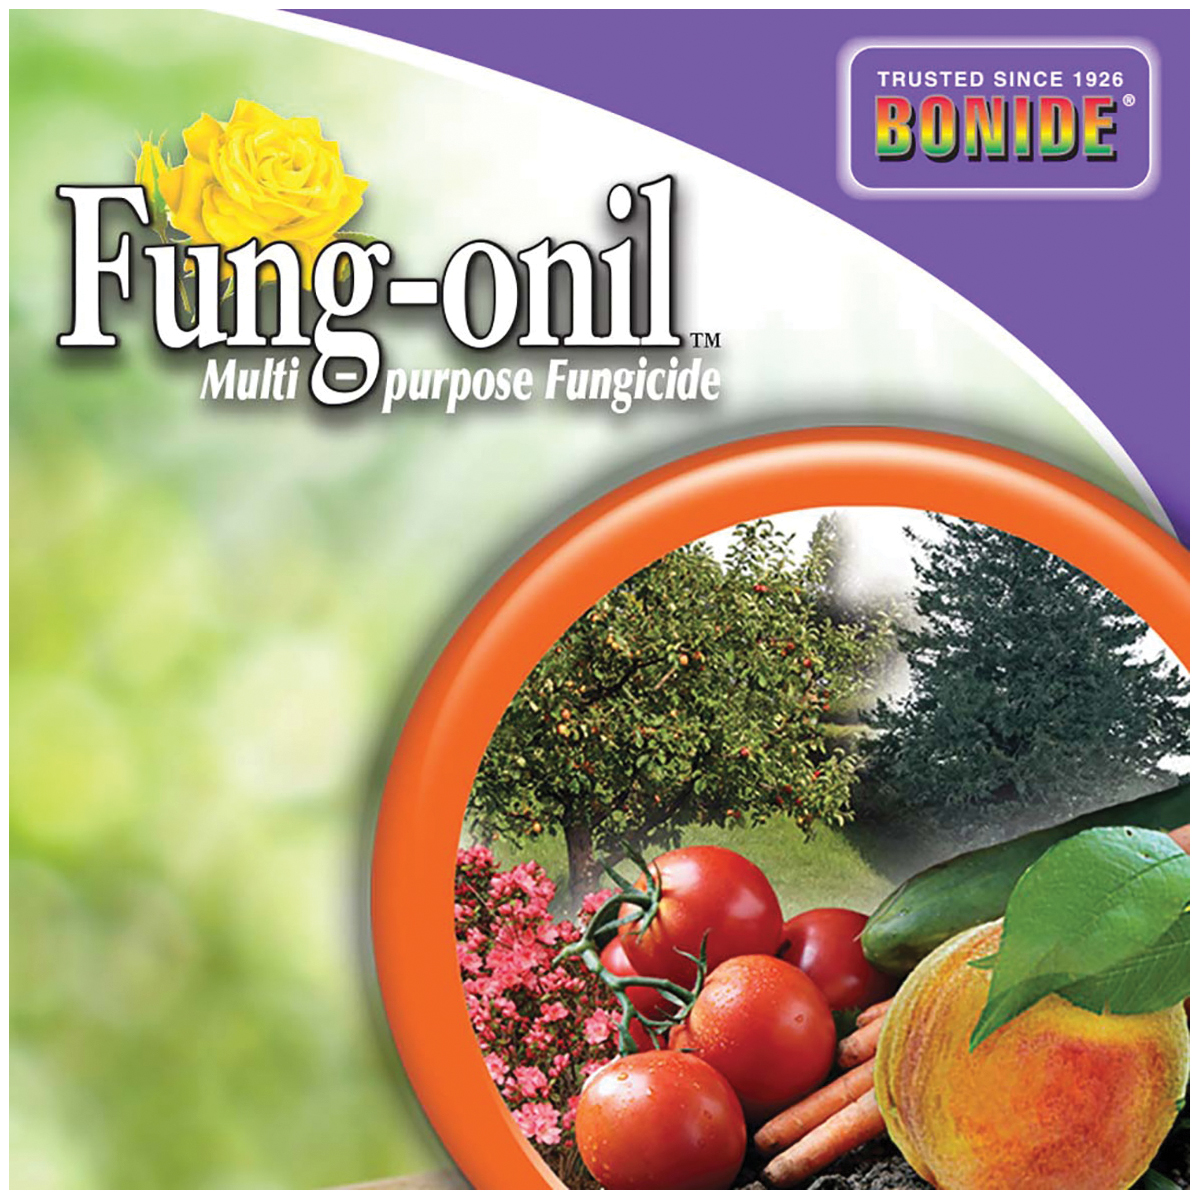 Bonide Fung-onil 880 Fungicide, Liquid, Minimal, White, 1 pt - 3